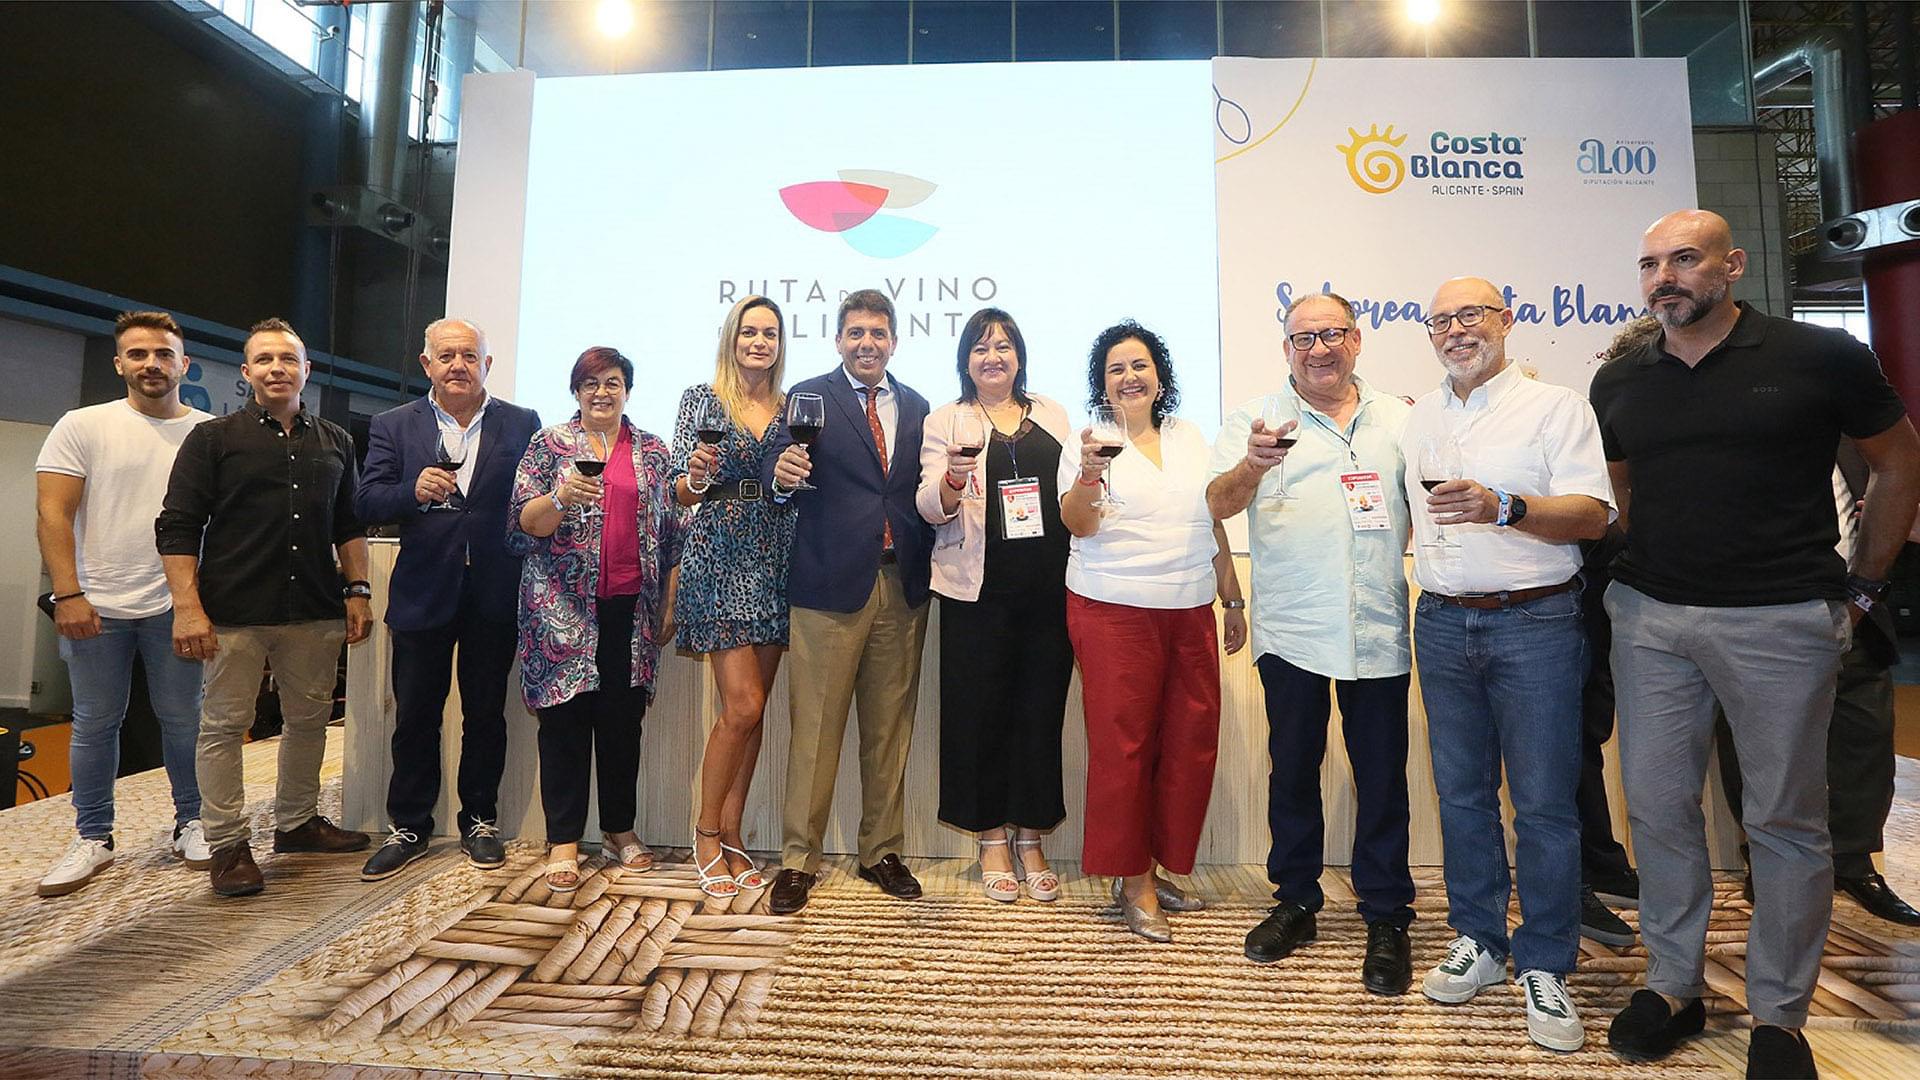 Presentación de la marca de la Ruta del Vino de Alicante, trabajo de rebranding de IDEADE Creativos